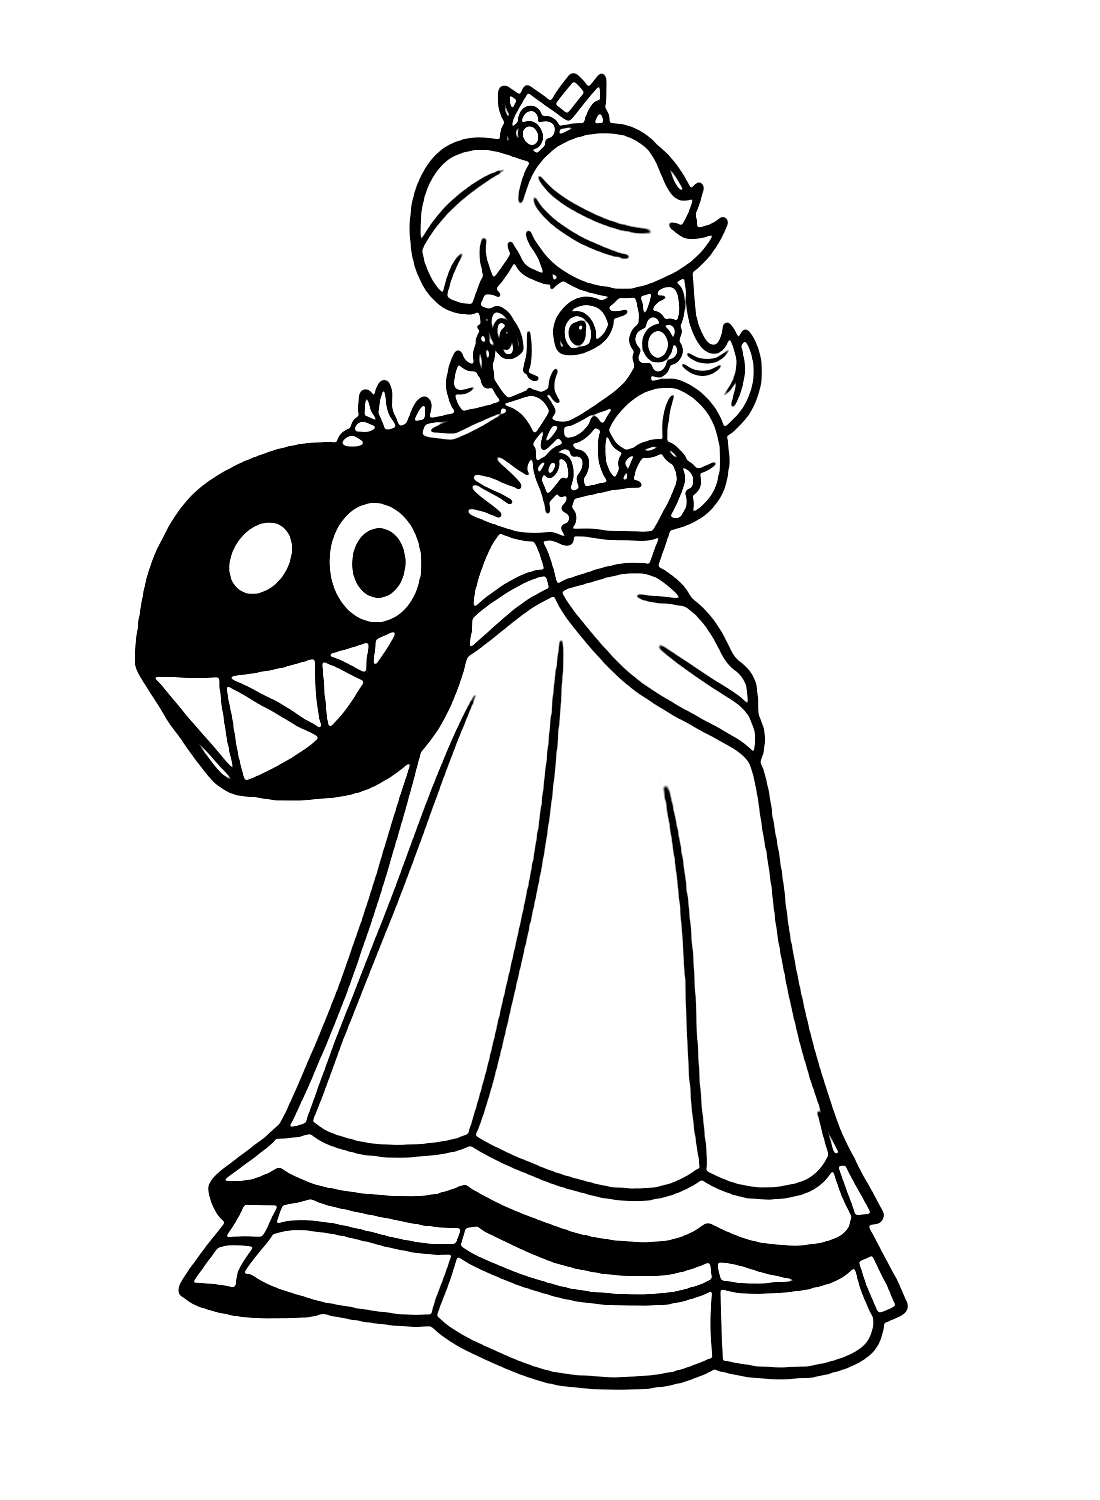 Princess Daisy in Super Mario Coloring Page